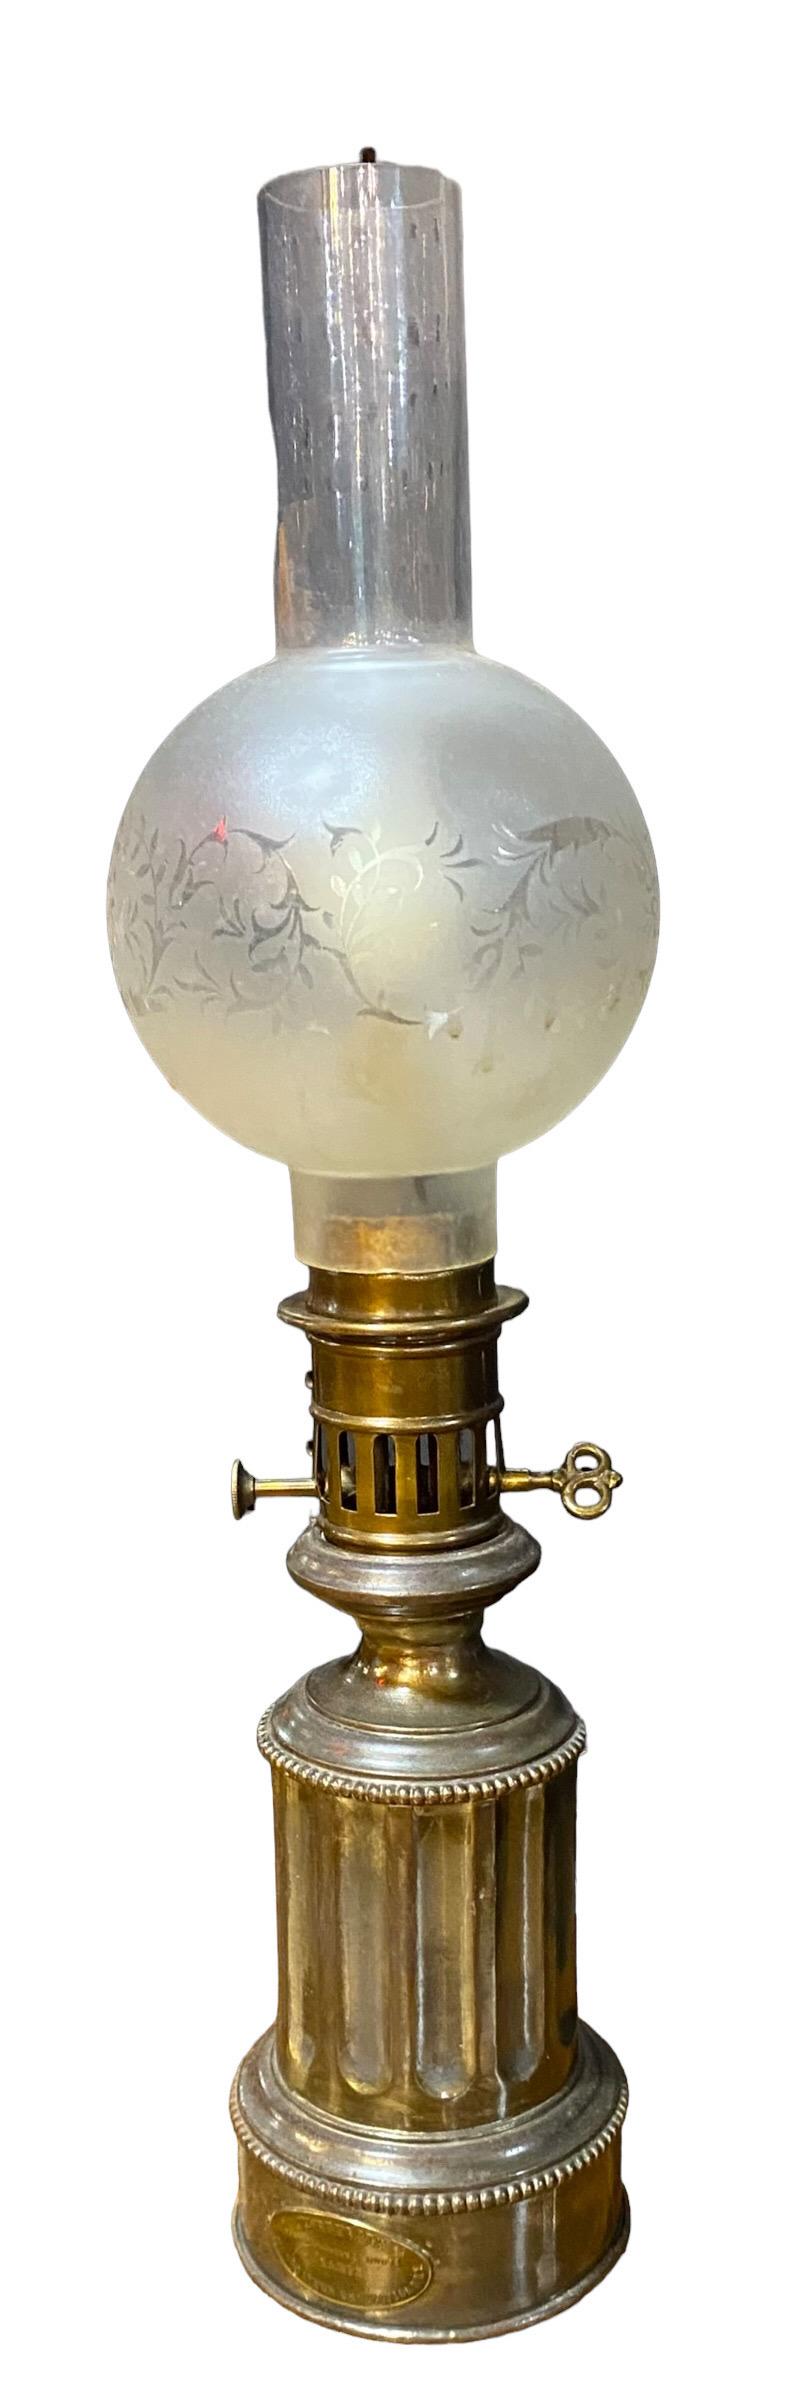 Une charmante lampe modérateur en laiton tolélé Louis Philippe ancienne, maintenant électrifiée pour une utilisation moderne. 
Créez une ambiance française chic en utilisant cette lampe d'appoint dans votre bureau, votre salon, votre salle à manger,